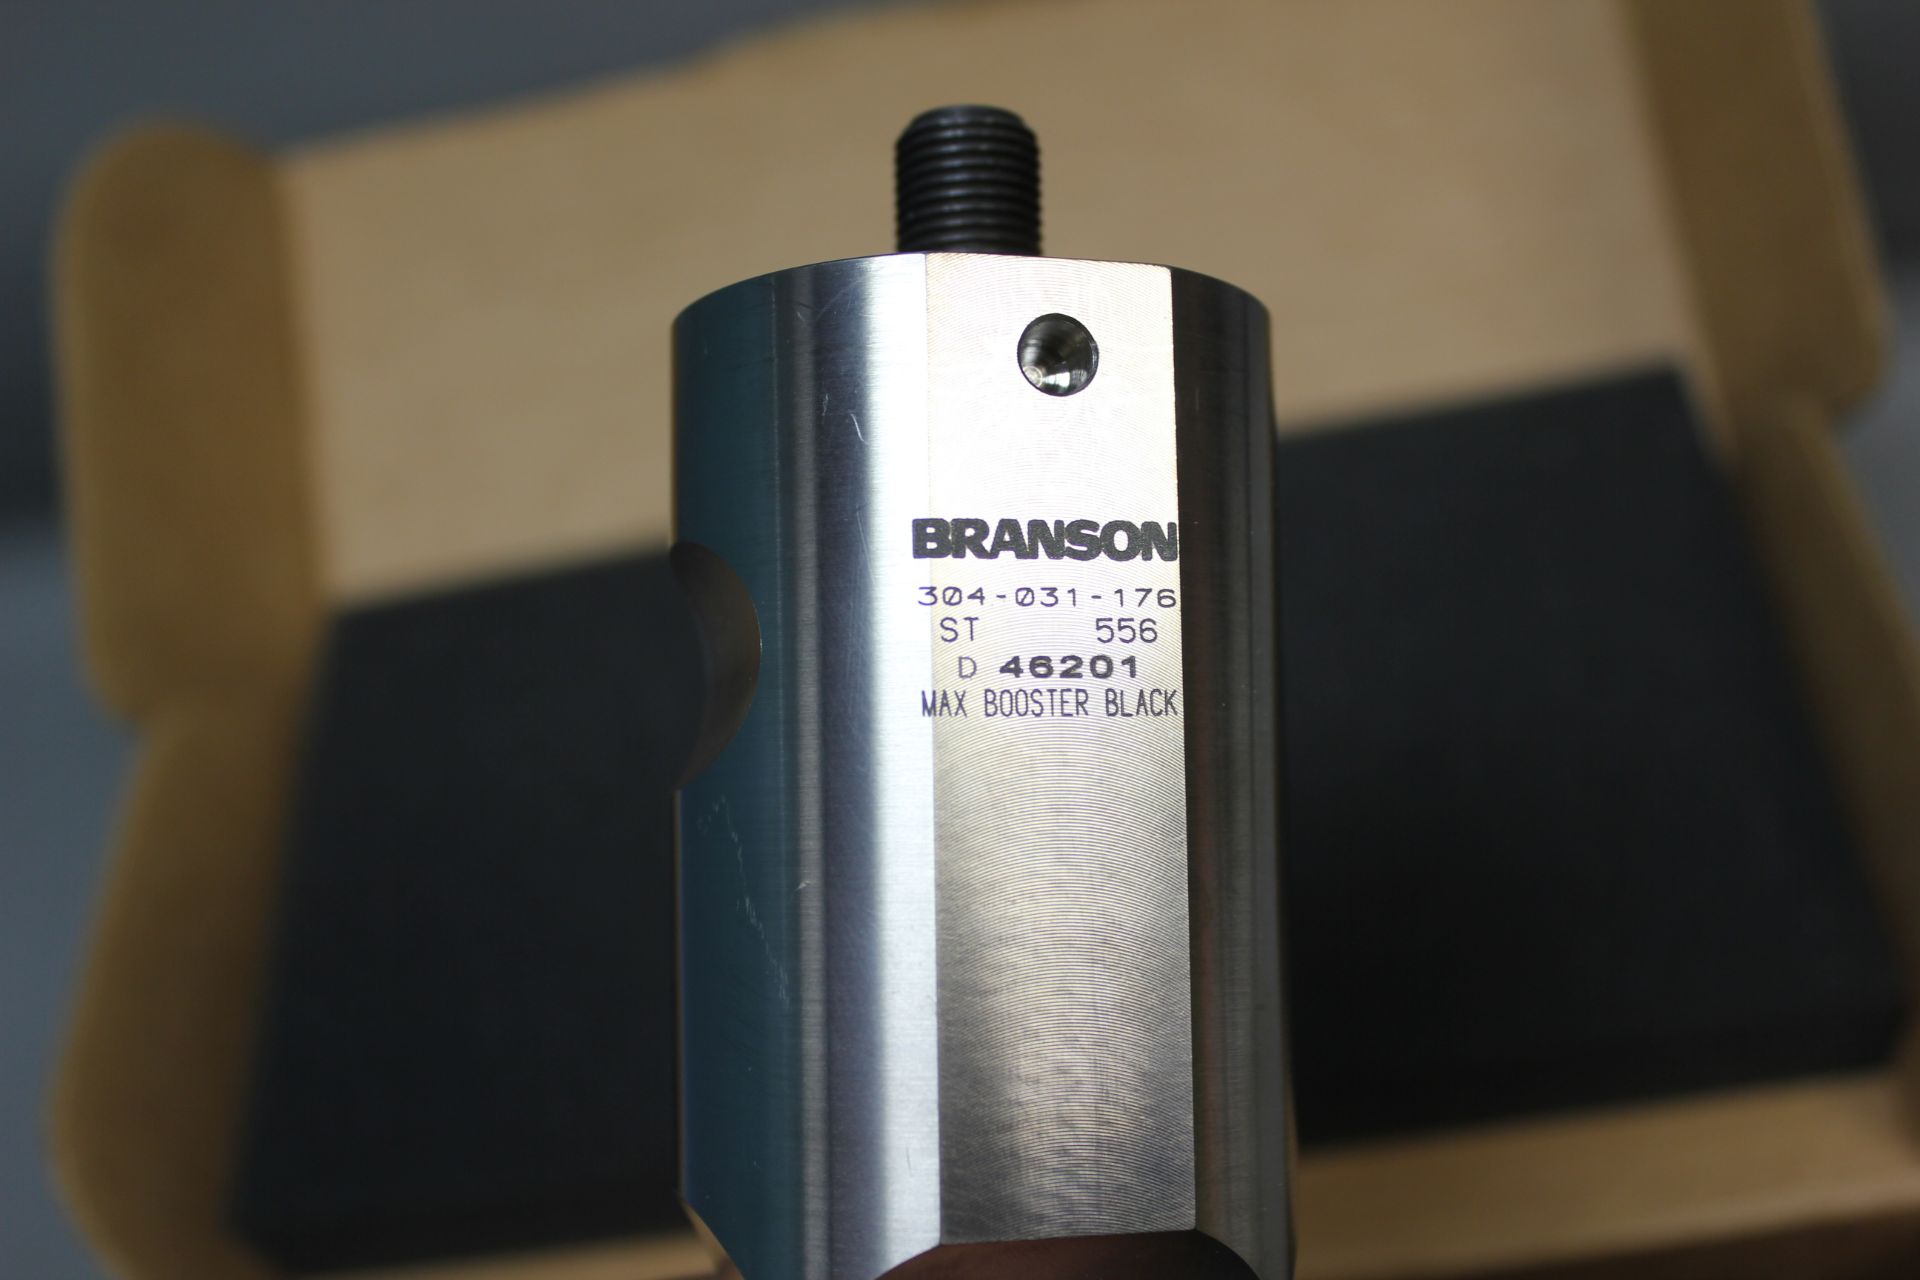 NEW BRANSON 600-015-176 ULTRASONIC WELDING HORN - Image 4 of 5